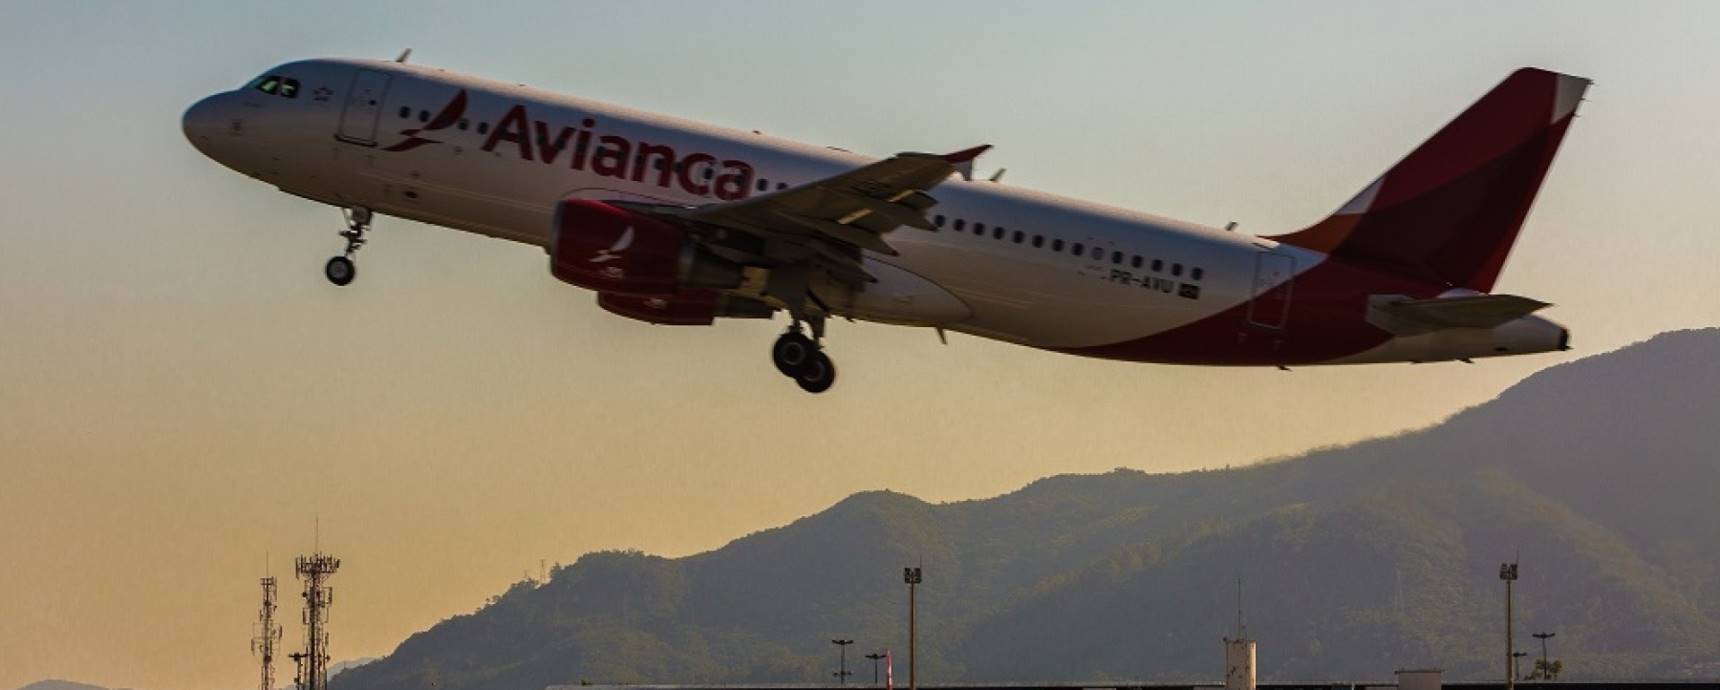 Floripa Airport poderá interromper serviços prestados à Avianca Brasil a partir de sexta-feira